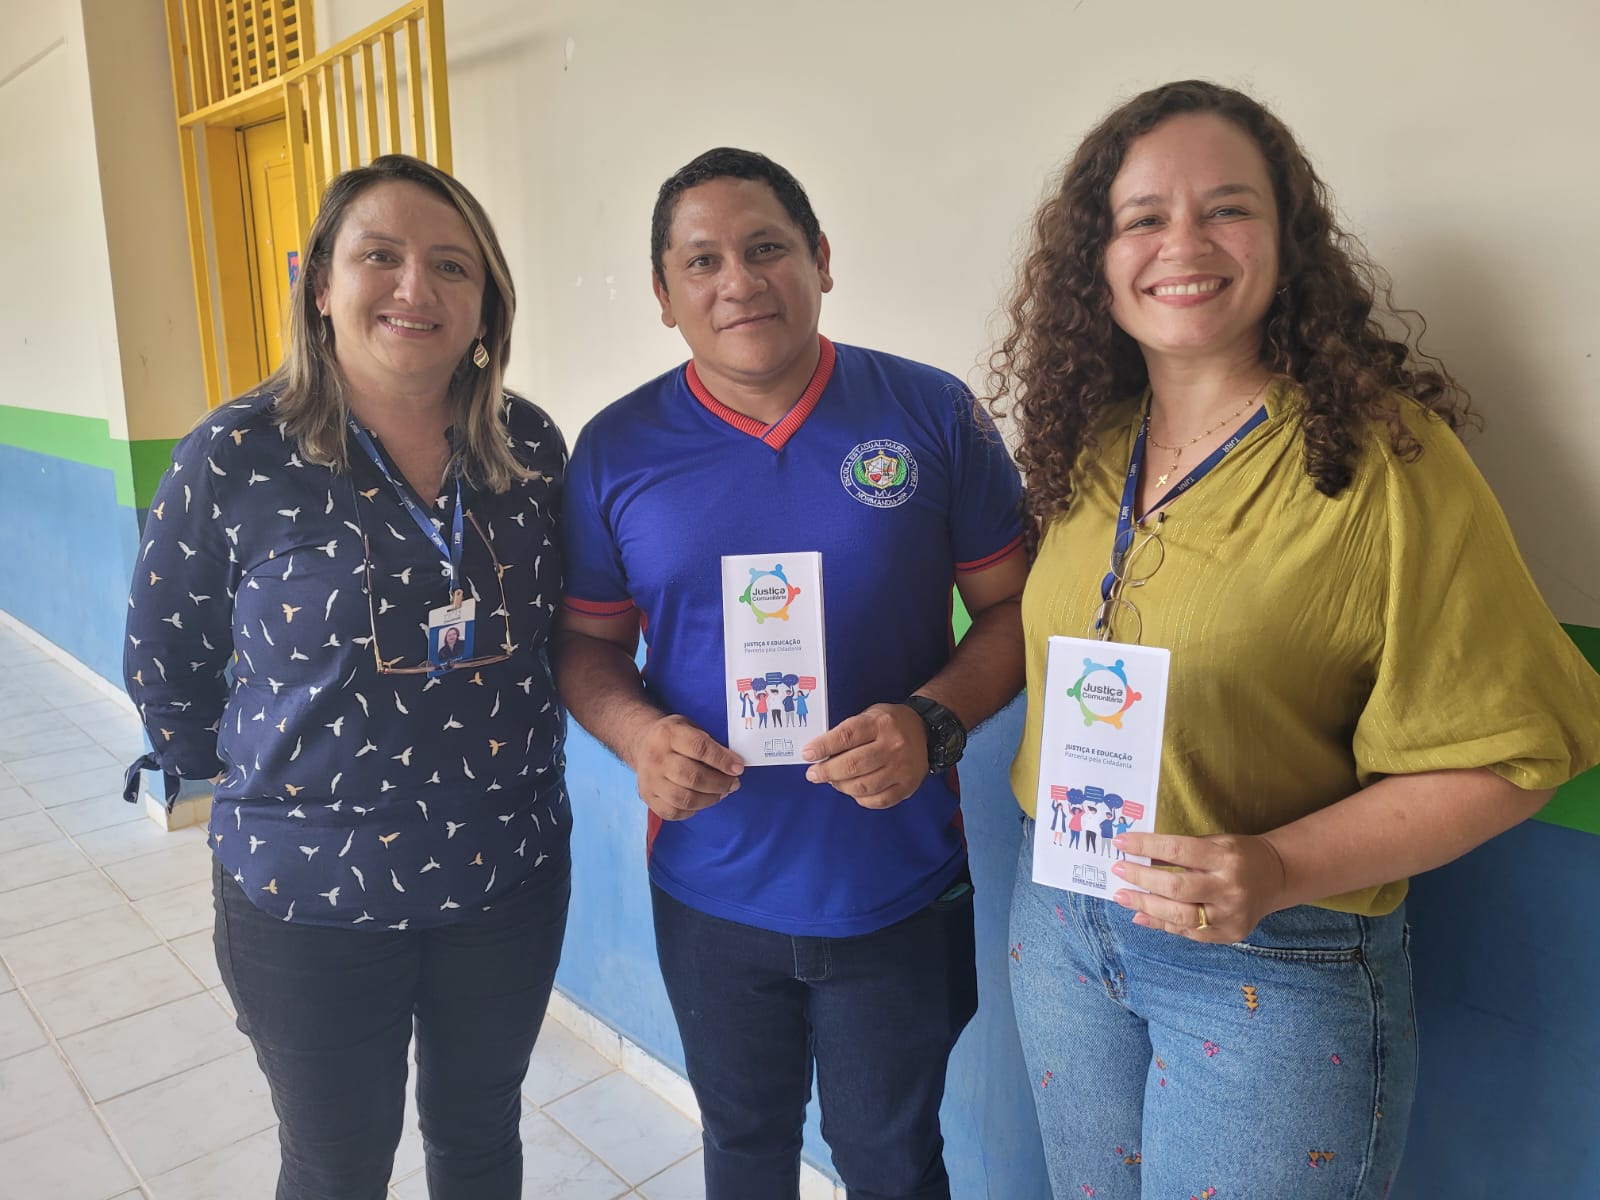 Imagem colorida mostra a coordenadora do Programa Justiça Comunitária, Marcelle Wottrich e a mediadora Dilma Roselli Coutinho, posando para foto ao lado de um educador .